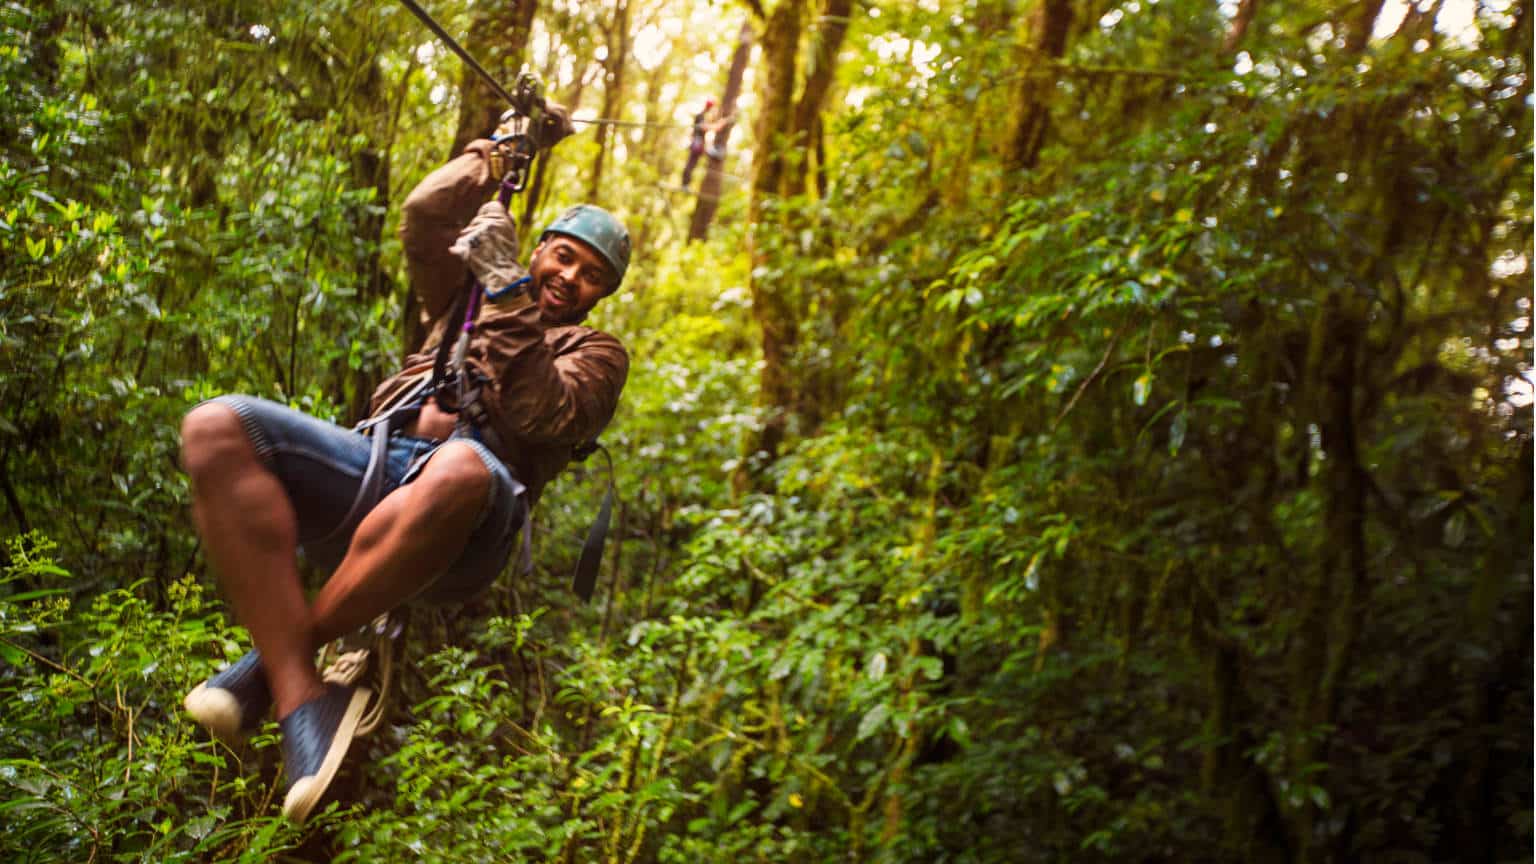 Costa-Rica-Monteverde-Ziplining